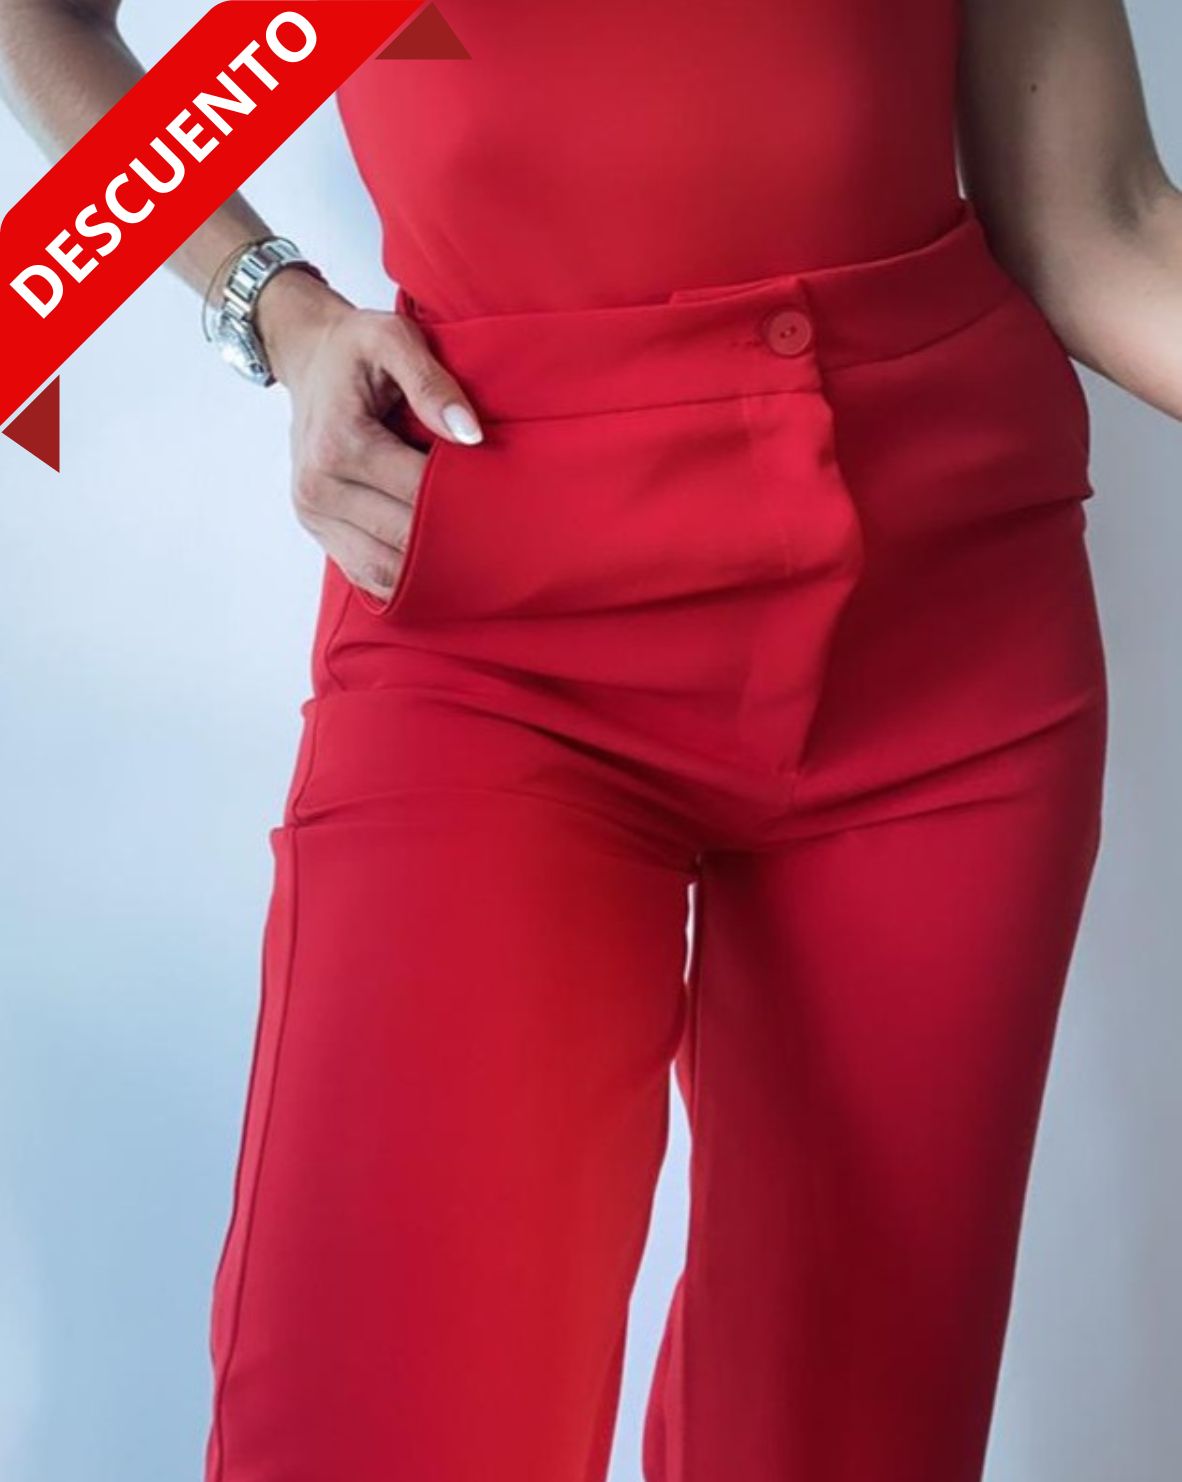 Pantalón rojo de pierna ancha para mujer, ideal para un look elegante y moderno.